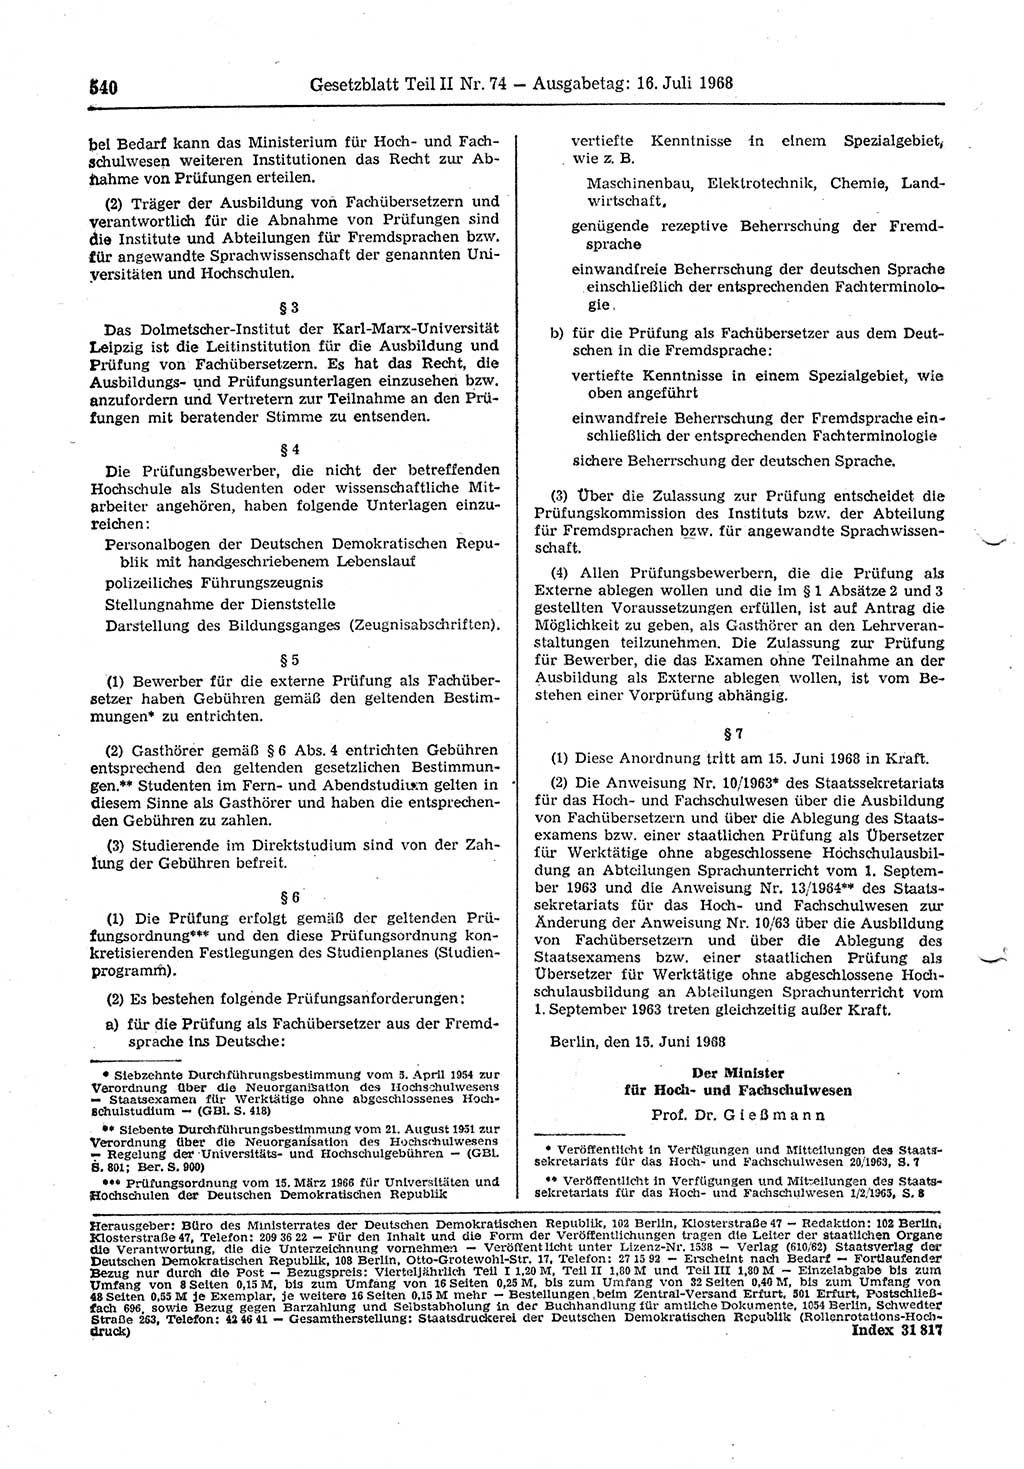 Gesetzblatt (GBl.) der Deutschen Demokratischen Republik (DDR) Teil ⅠⅠ 1968, Seite 540 (GBl. DDR ⅠⅠ 1968, S. 540)